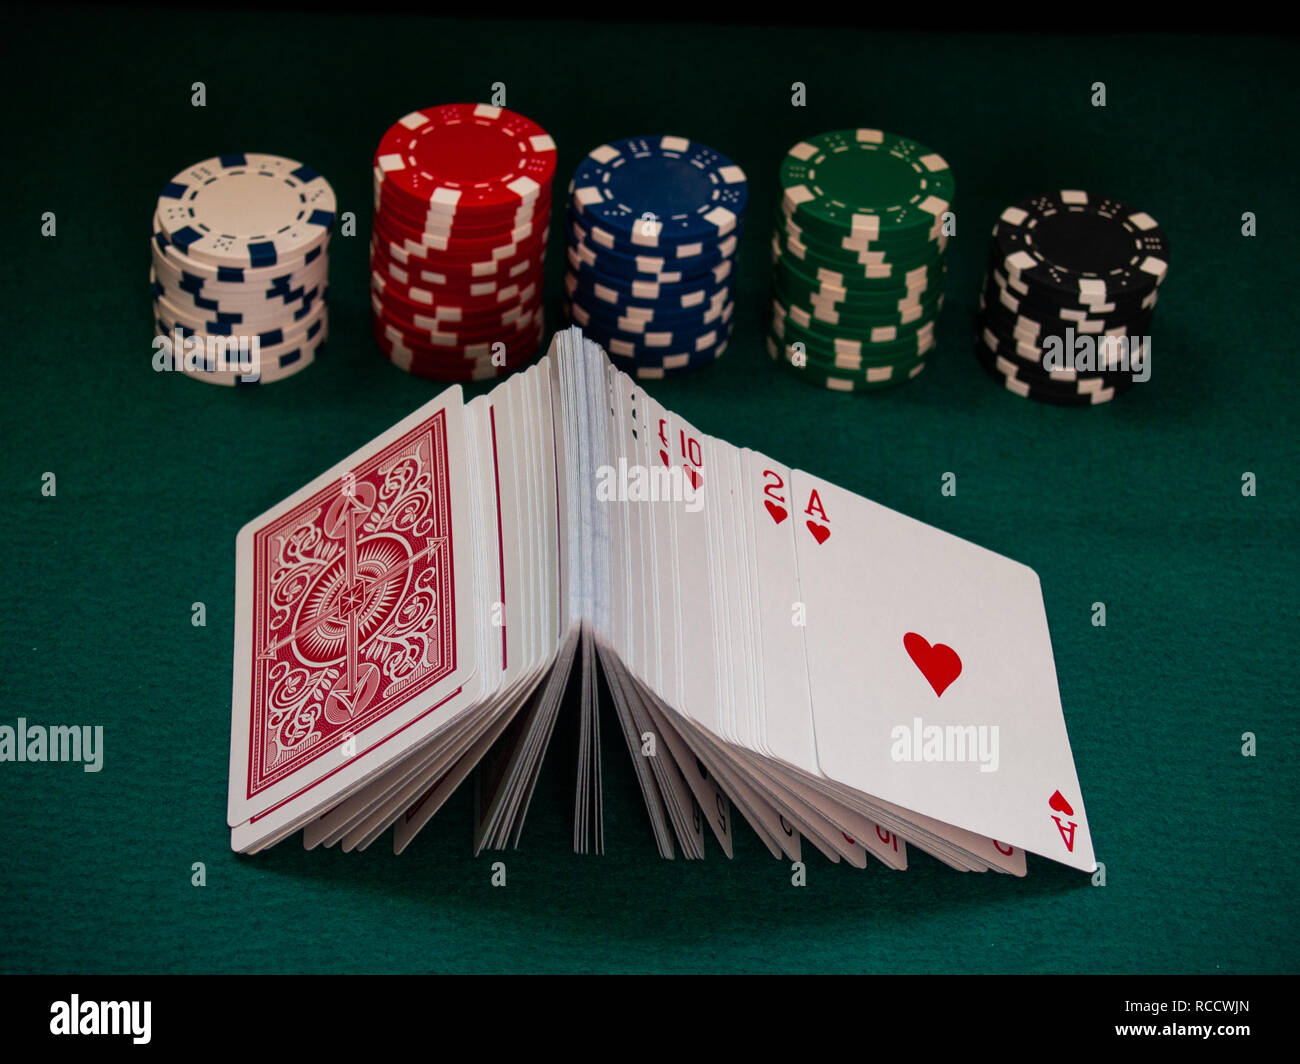 Un jeu de cartes de poker et de poker jetons de différentes couleurs sur un tapis vert Banque D'Images